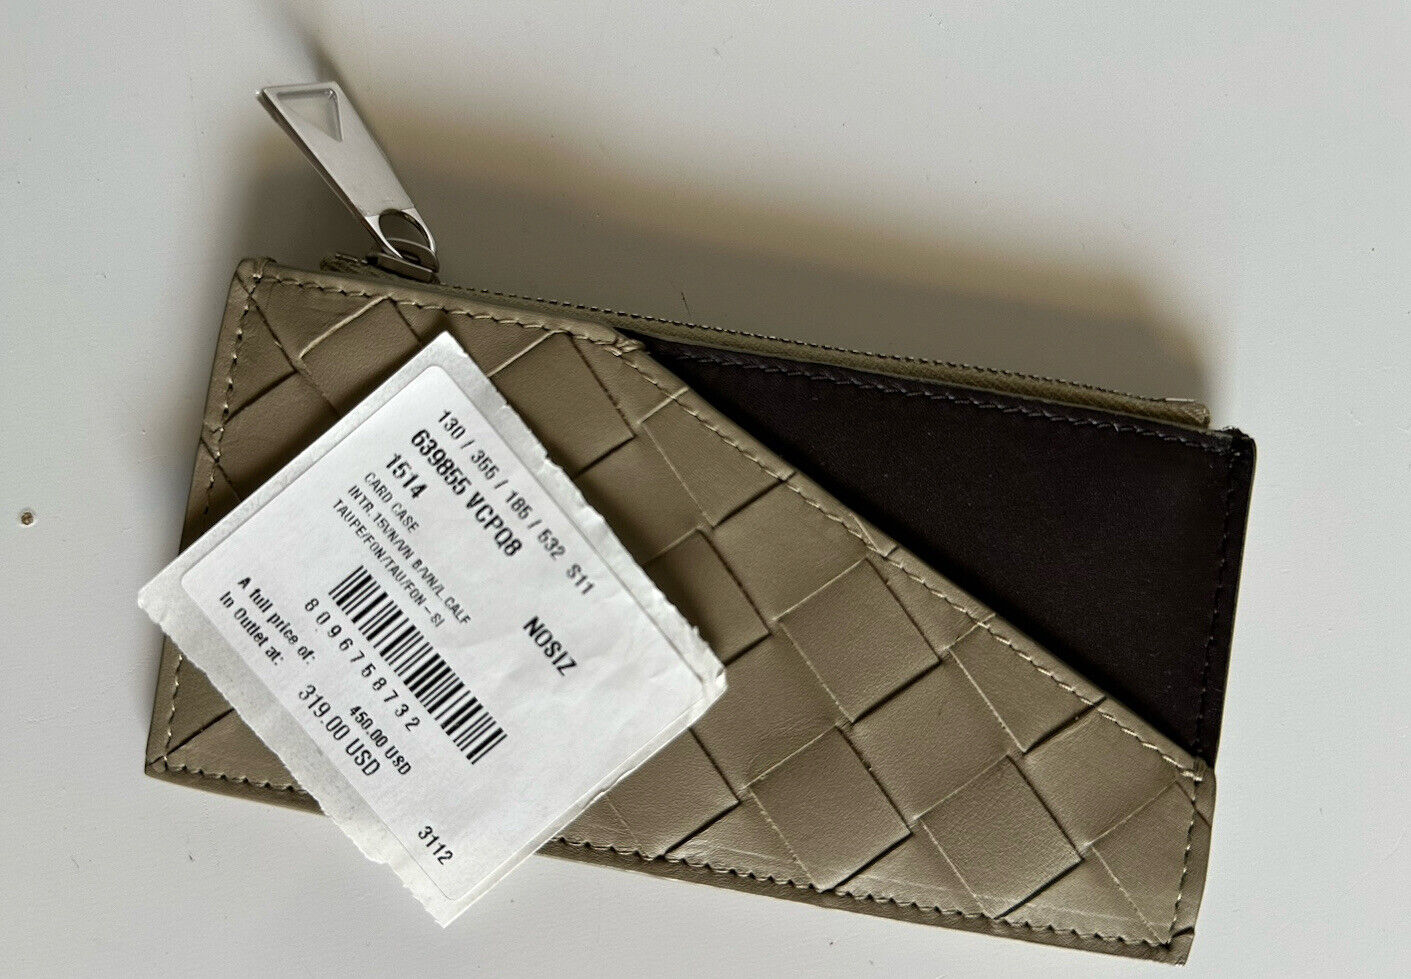 Neu mit Etikett: 450 $ Bottega Veneta Schmales Leder-Geldbörse mit Reißverschluss, langes Intrecciato-Gewebe, Italien